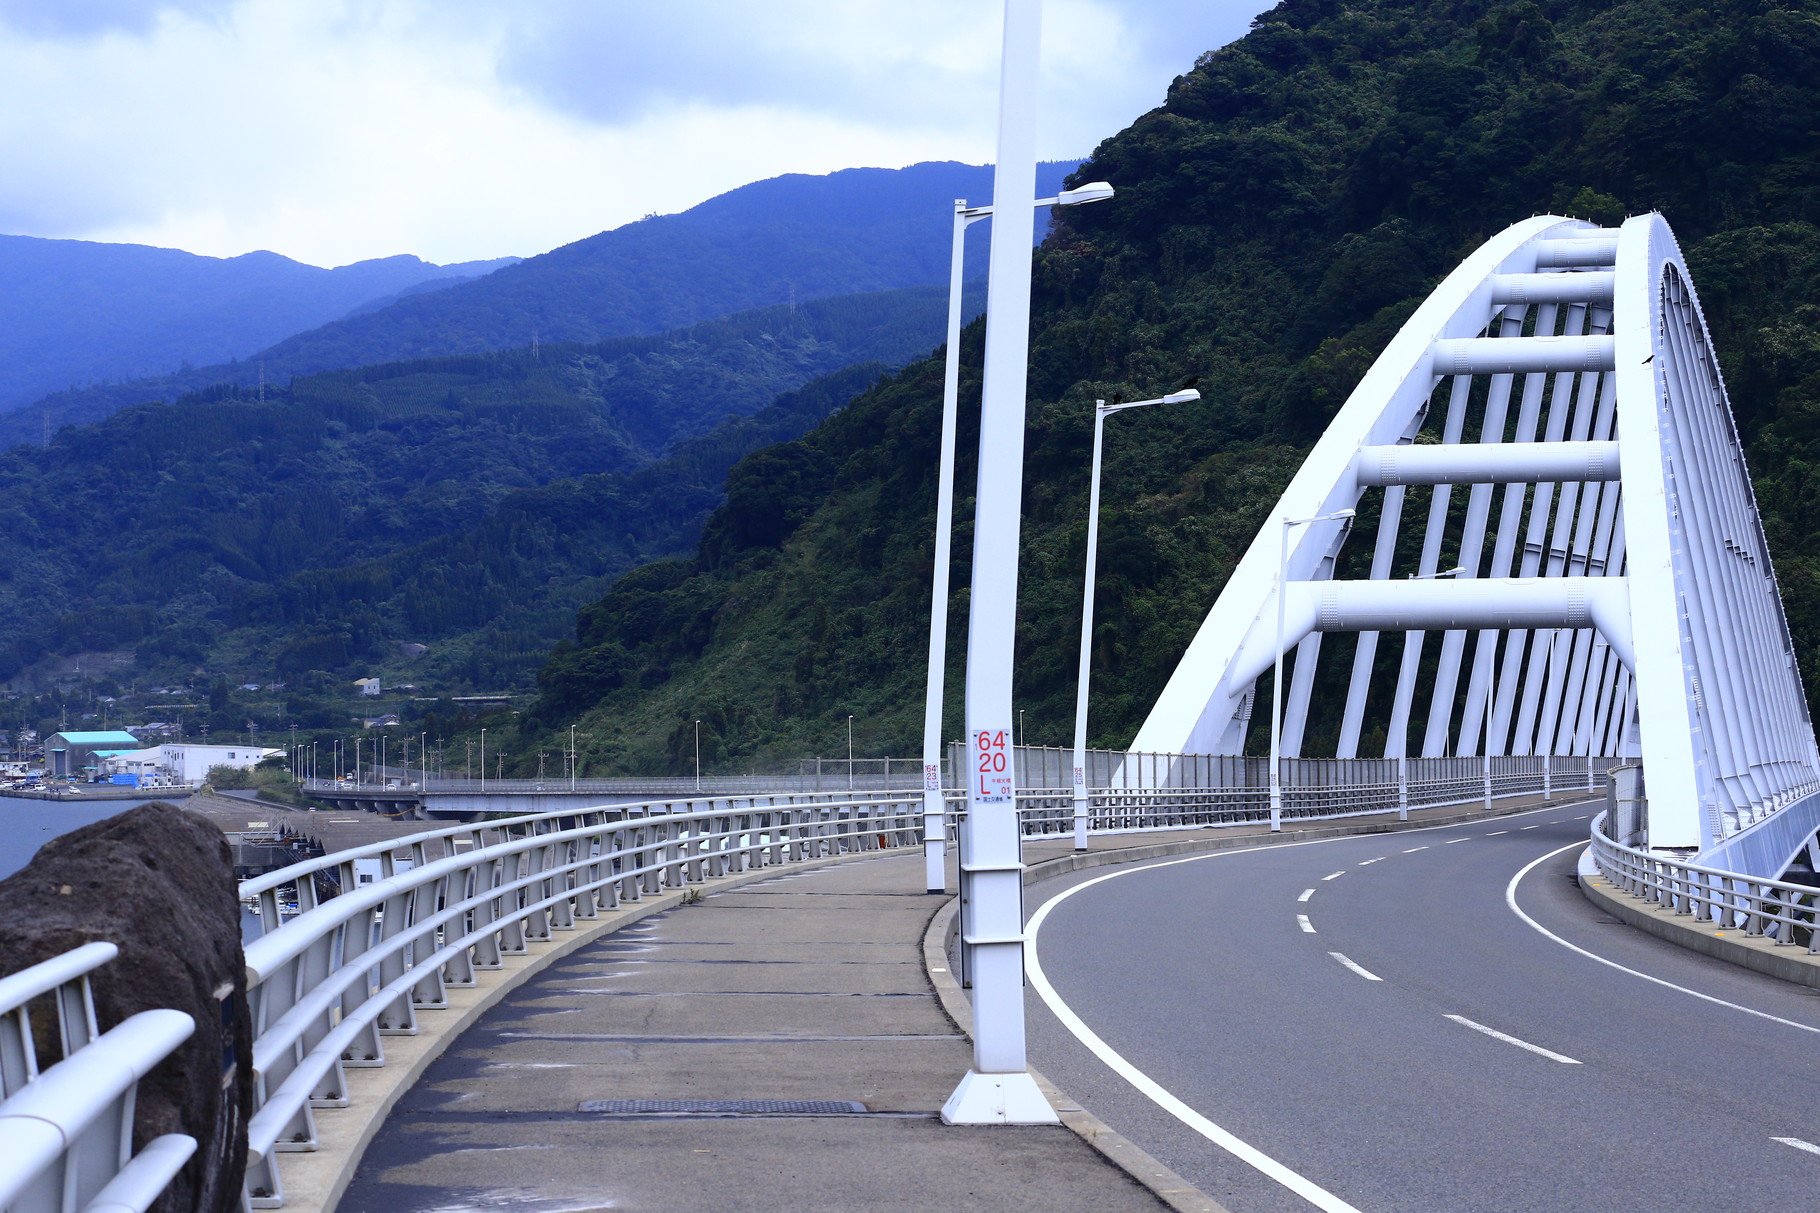 垂水市牛根と桜島とを結ぶ「牛根大橋」。バランスドアーチという構造形式では九州最長だそうだ。